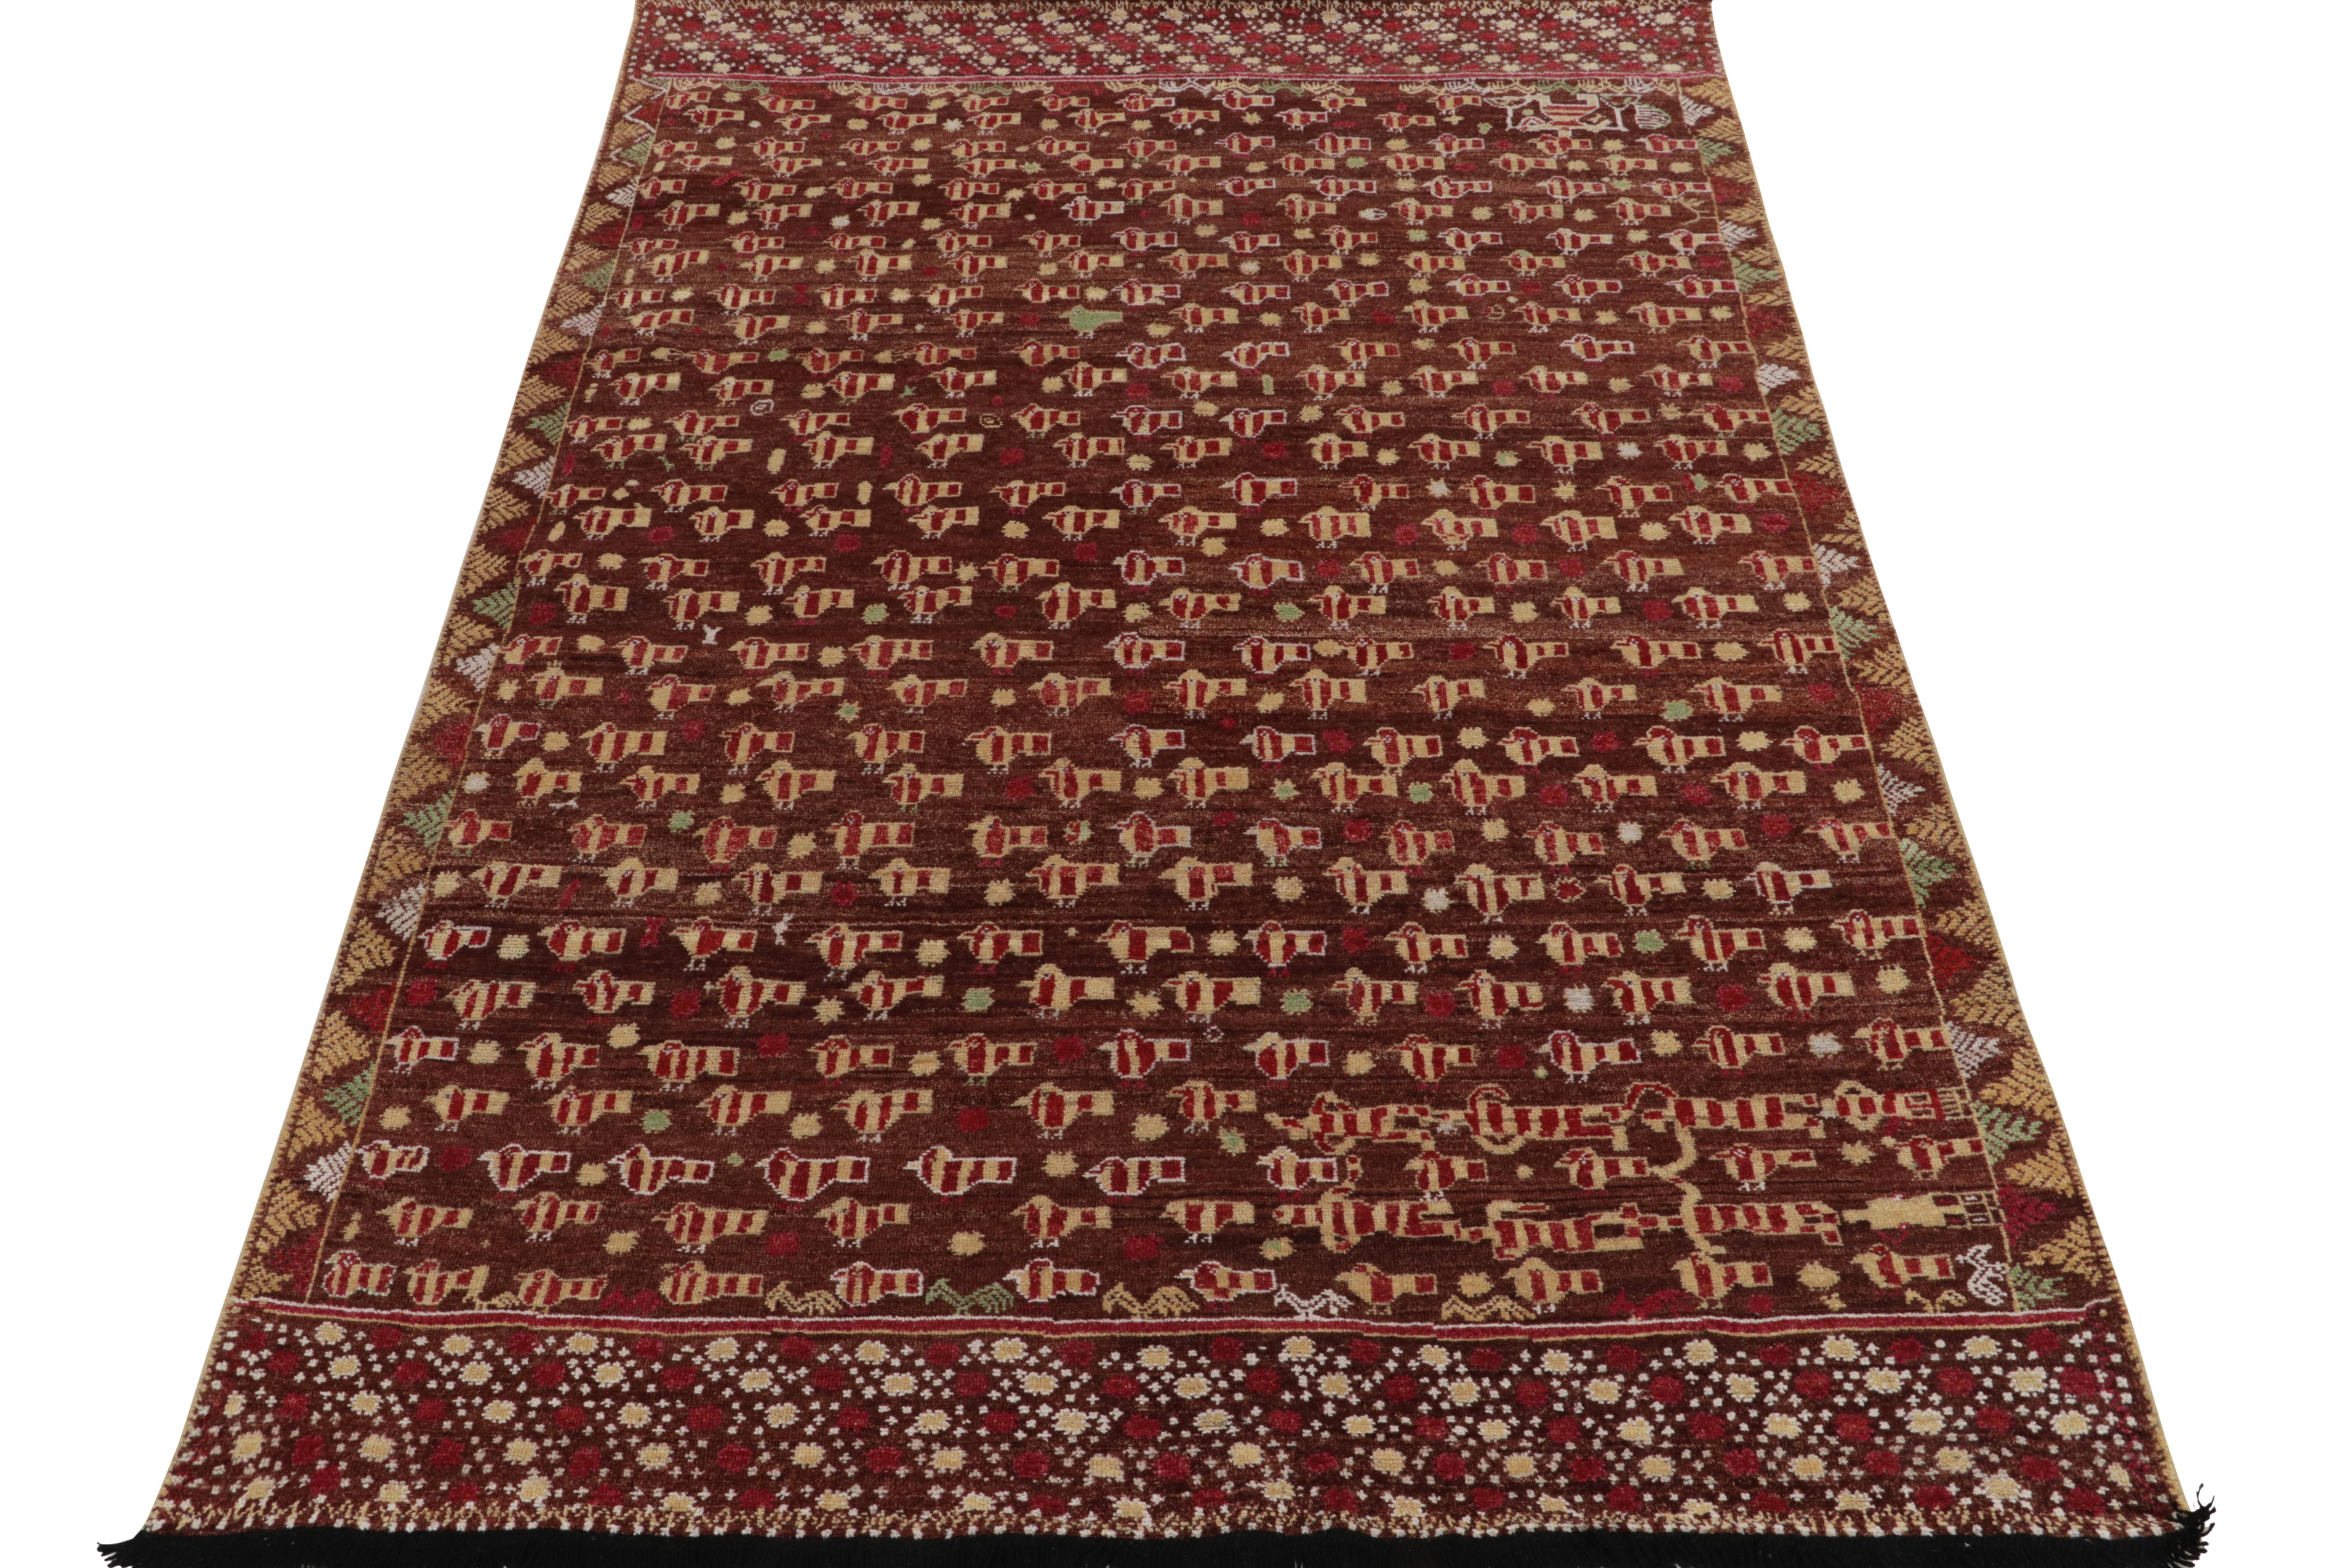 Tissé à la main en laine fine, ce tapis 6x9 de notre collection Burano adapte magnifiquement l'inspiration de l'art folklorique Phulkari à un poil riche et contemporain. Cette vision donne lieu à une interprétation délicate de pictogrammes d'oiseaux